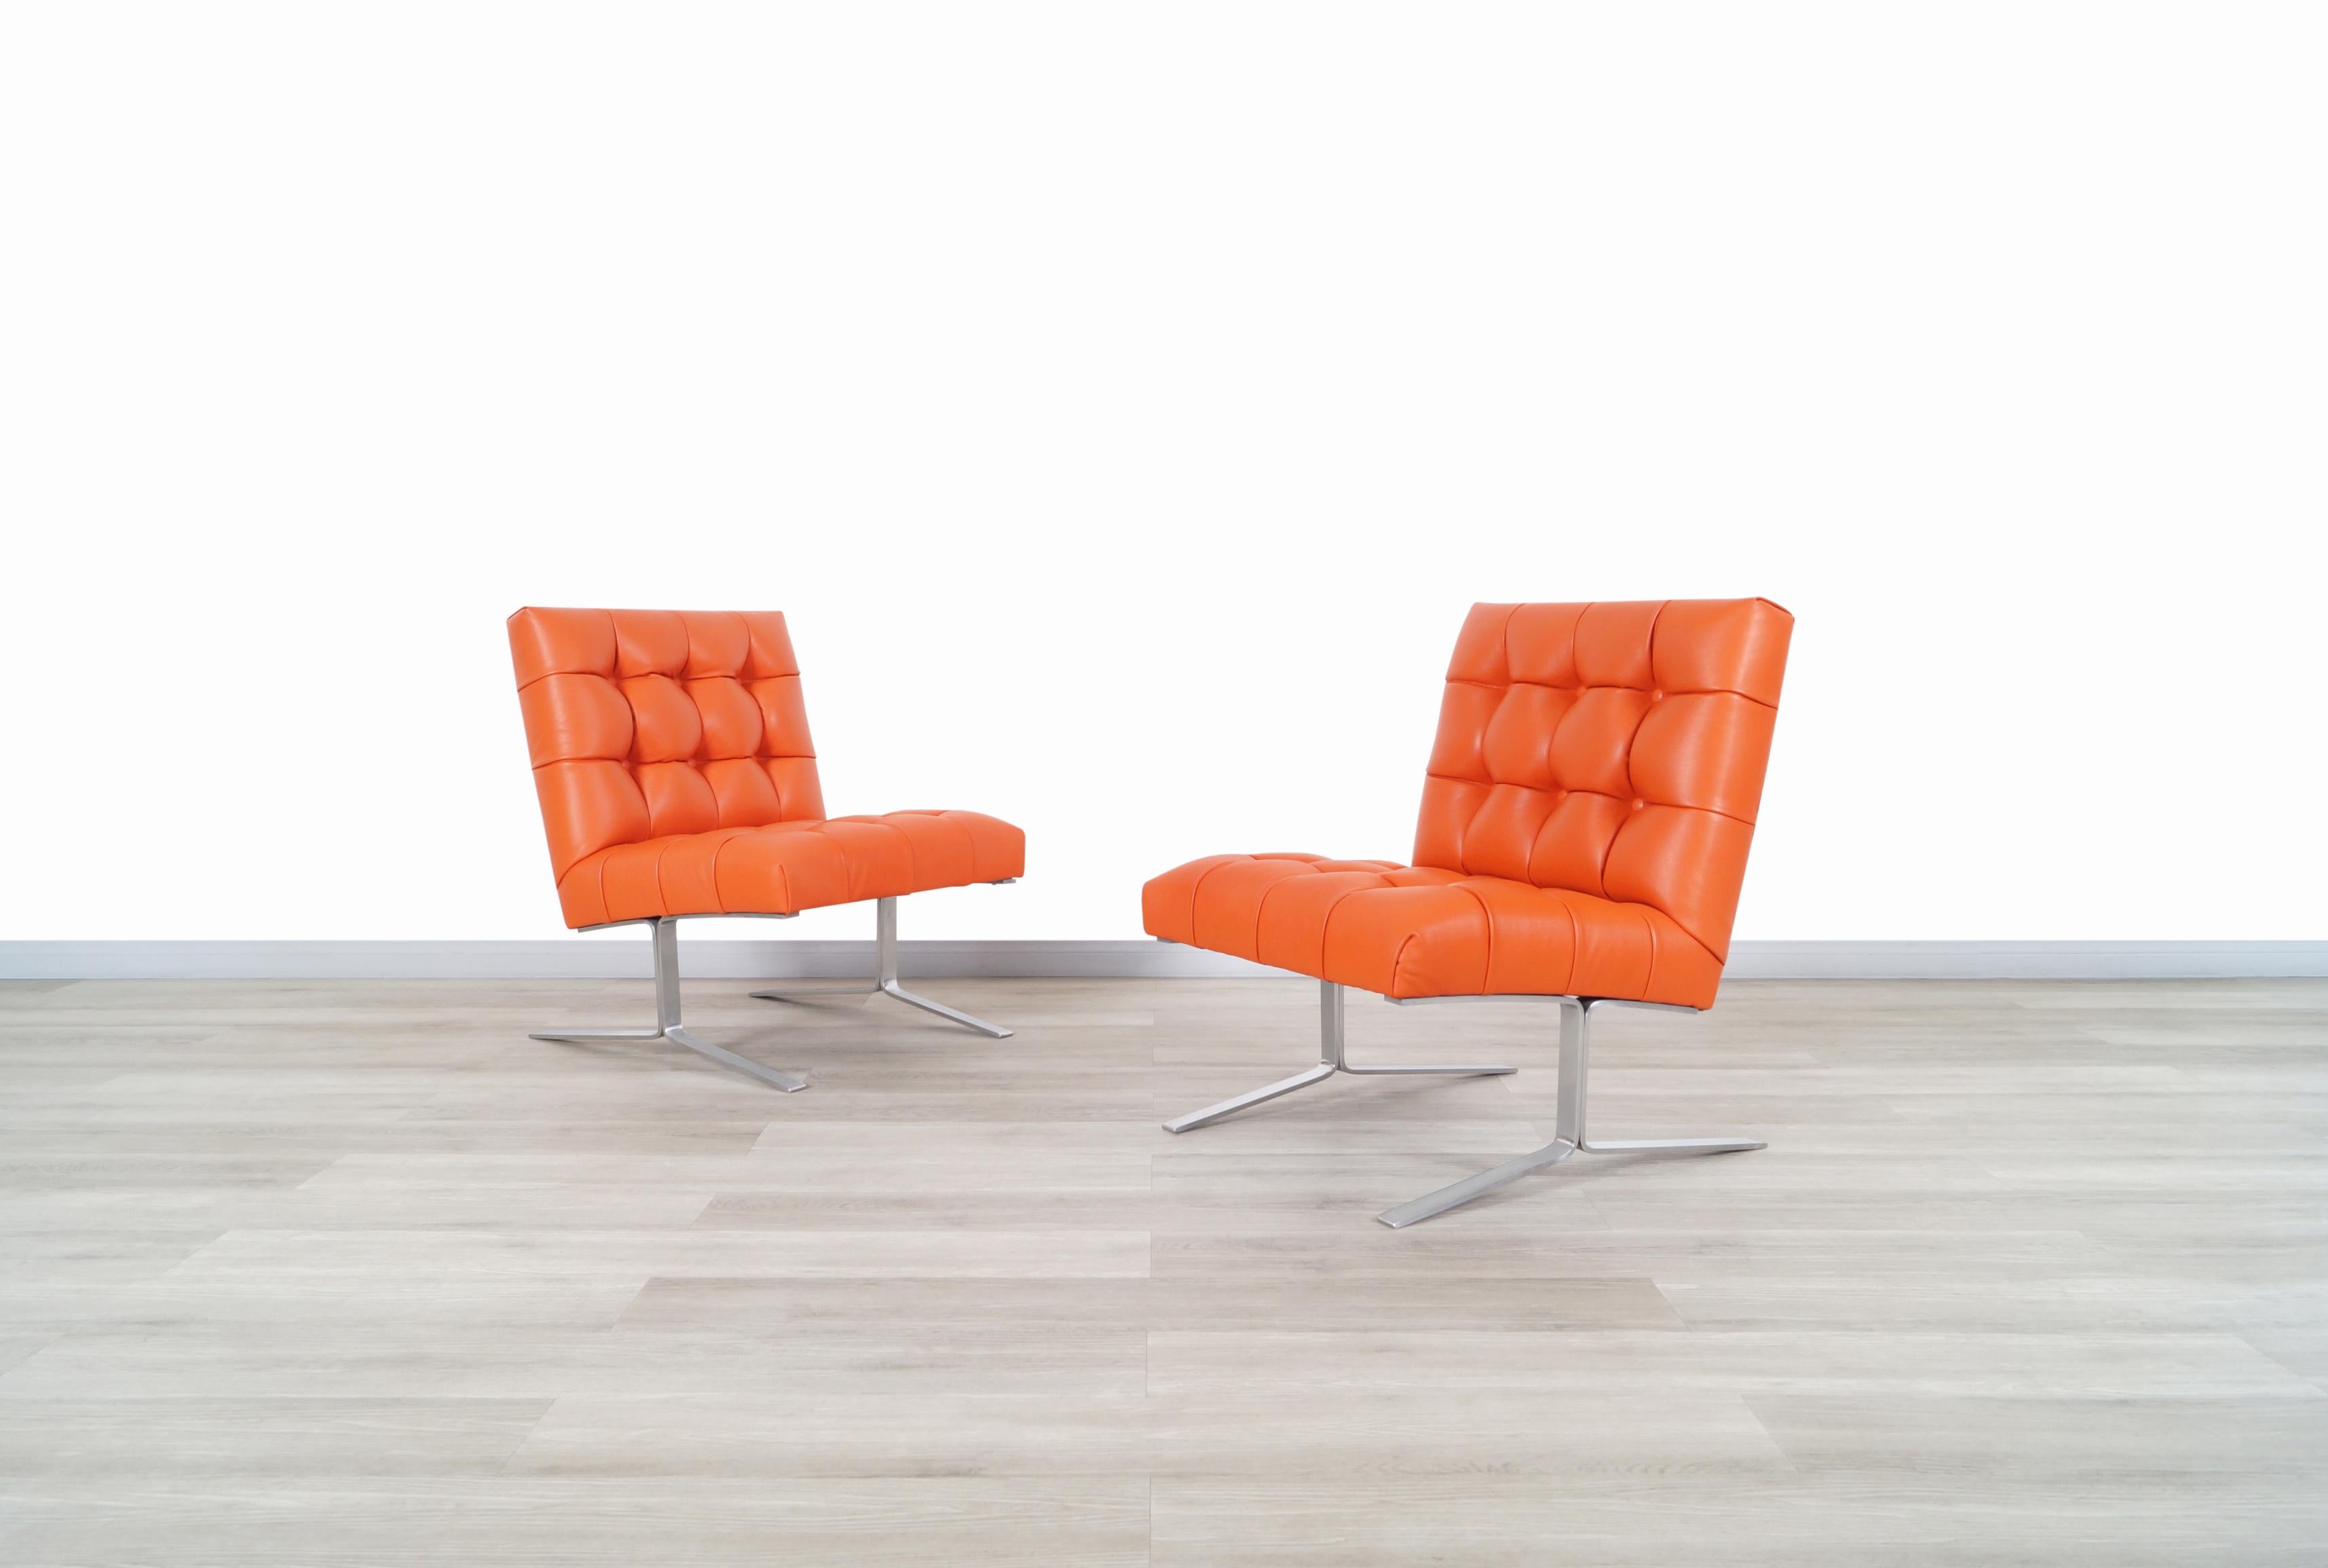 Fabelhafte Vintage-Loungesessel aus Leder in der Art von Ludwig Mies van der Rohe. Diese Stühle verfügen über ein innovatives Design, das sich durch seine ergonomische Struktur auszeichnet und eine bessere Erholung beim Sitzen bietet. Sie wurden von